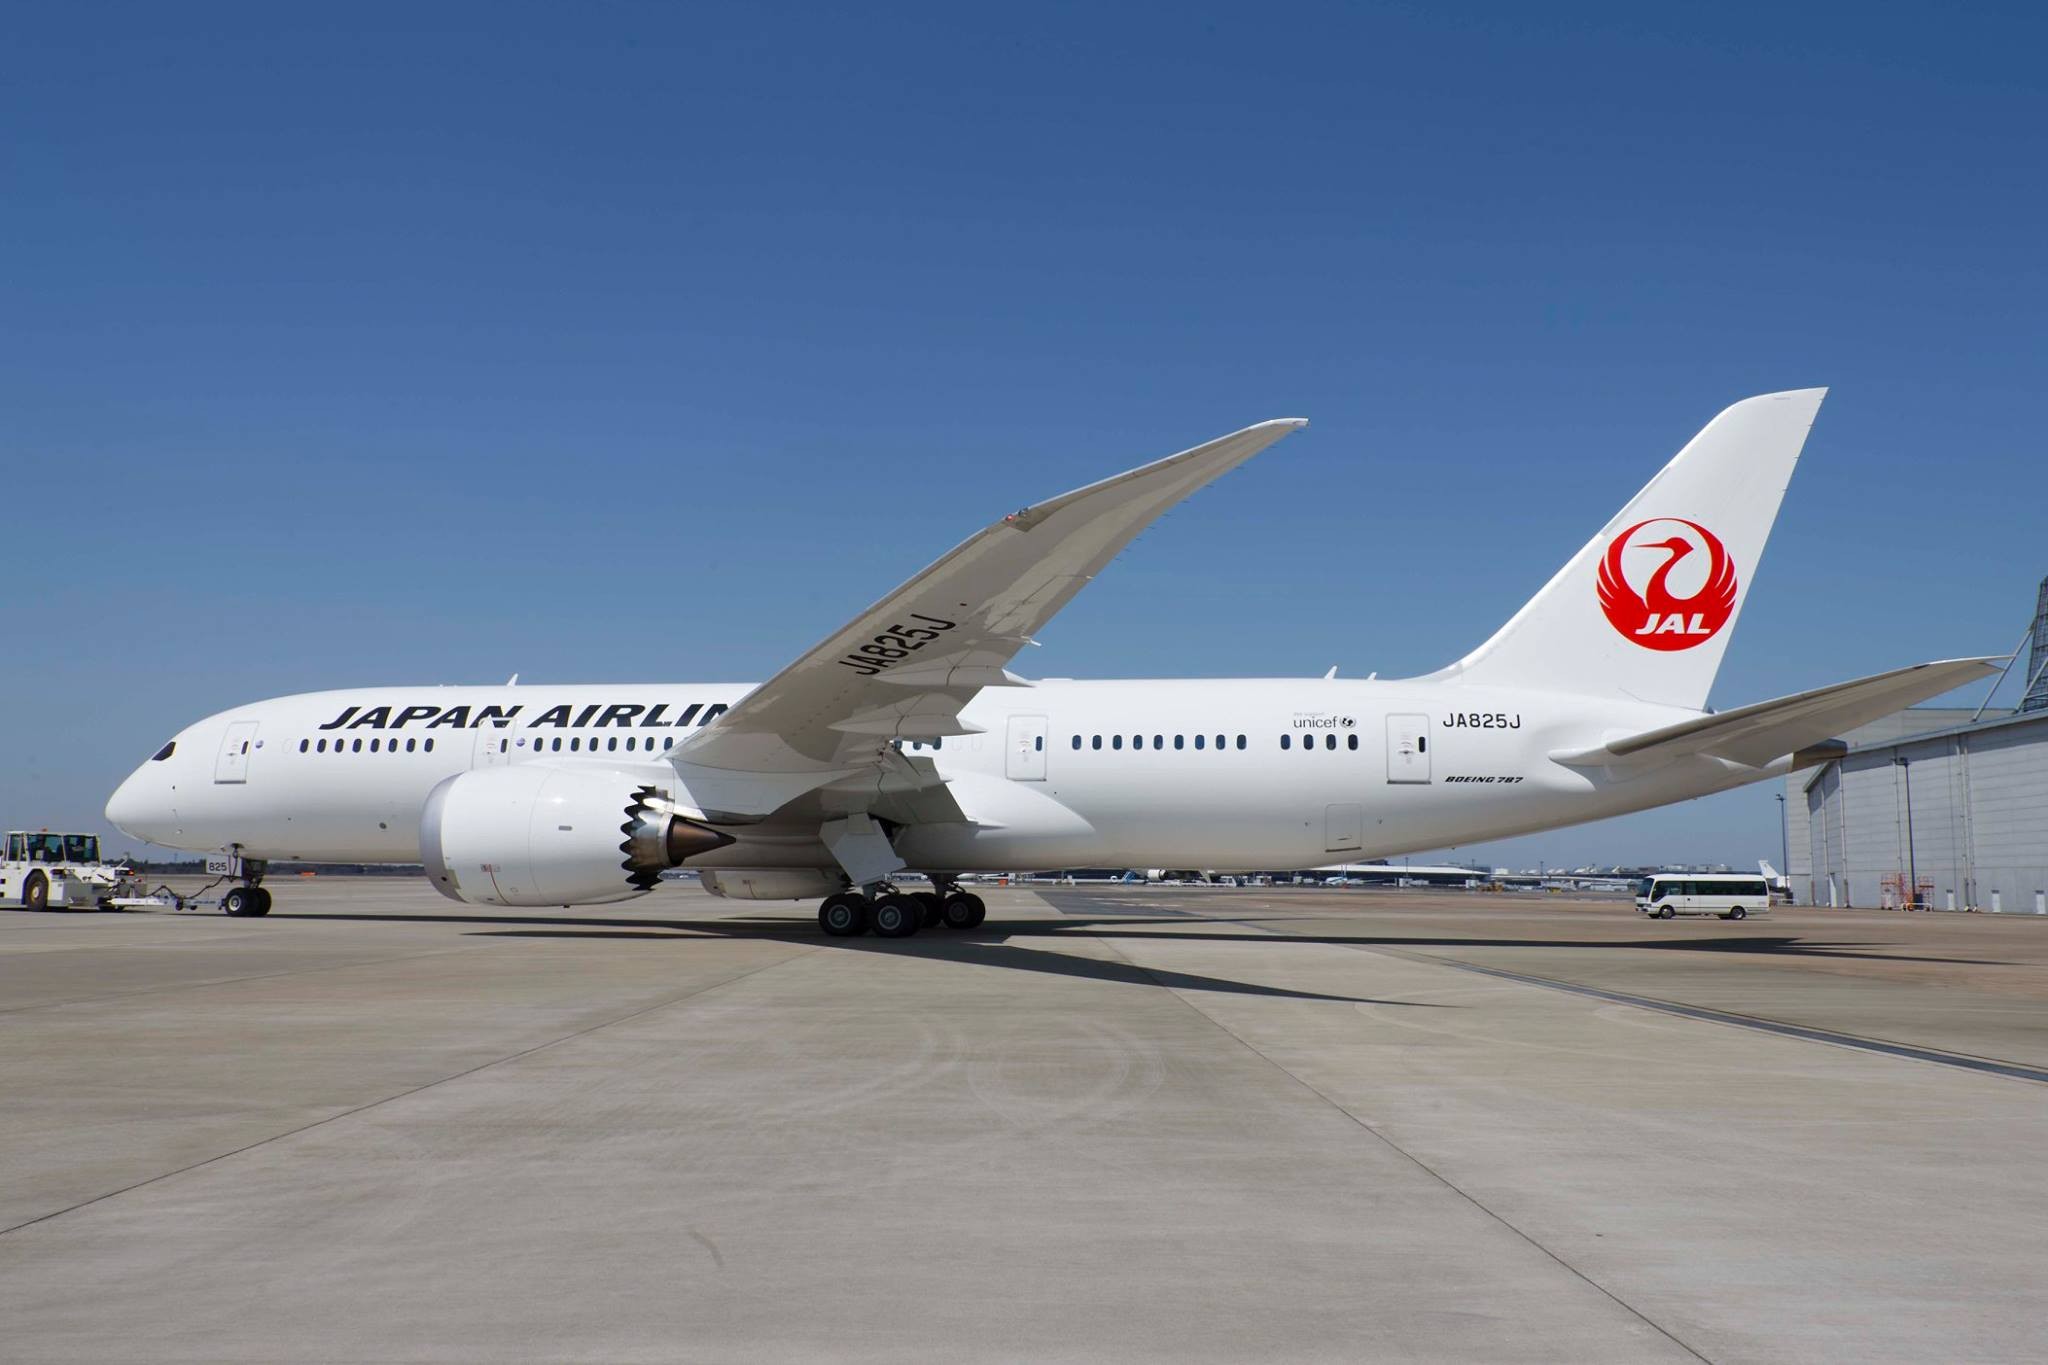 日本航空全新廉航品牌今正式成立公司名 T B L Ettoday旅遊雲 Ettoday新聞雲